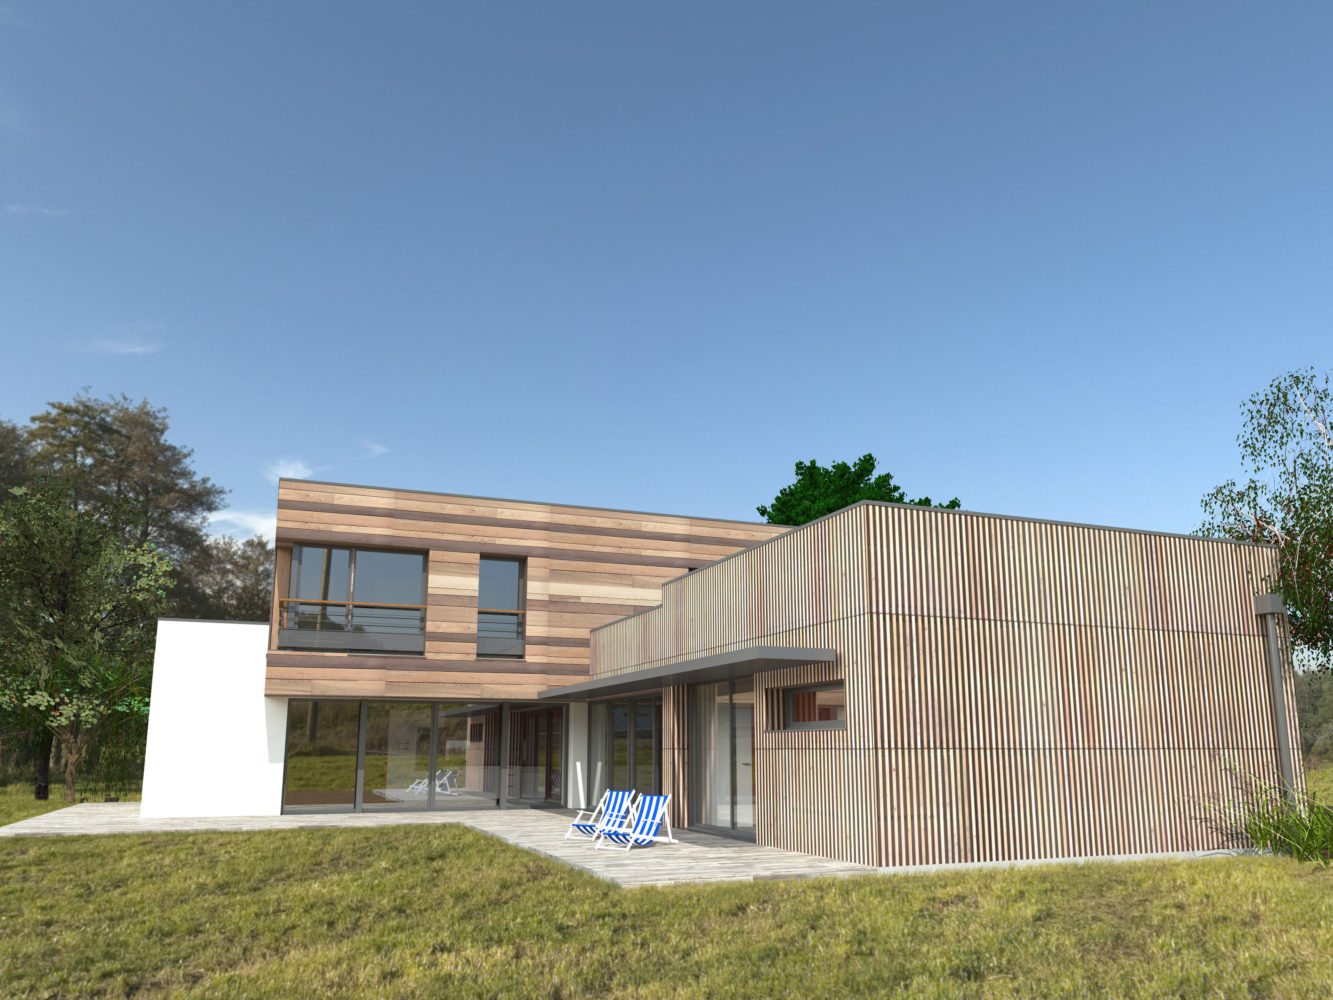 Philippe_Zerbib_Architecte_construction_maisons_ossature_bois_projet_maison_Duchet_View 10_2